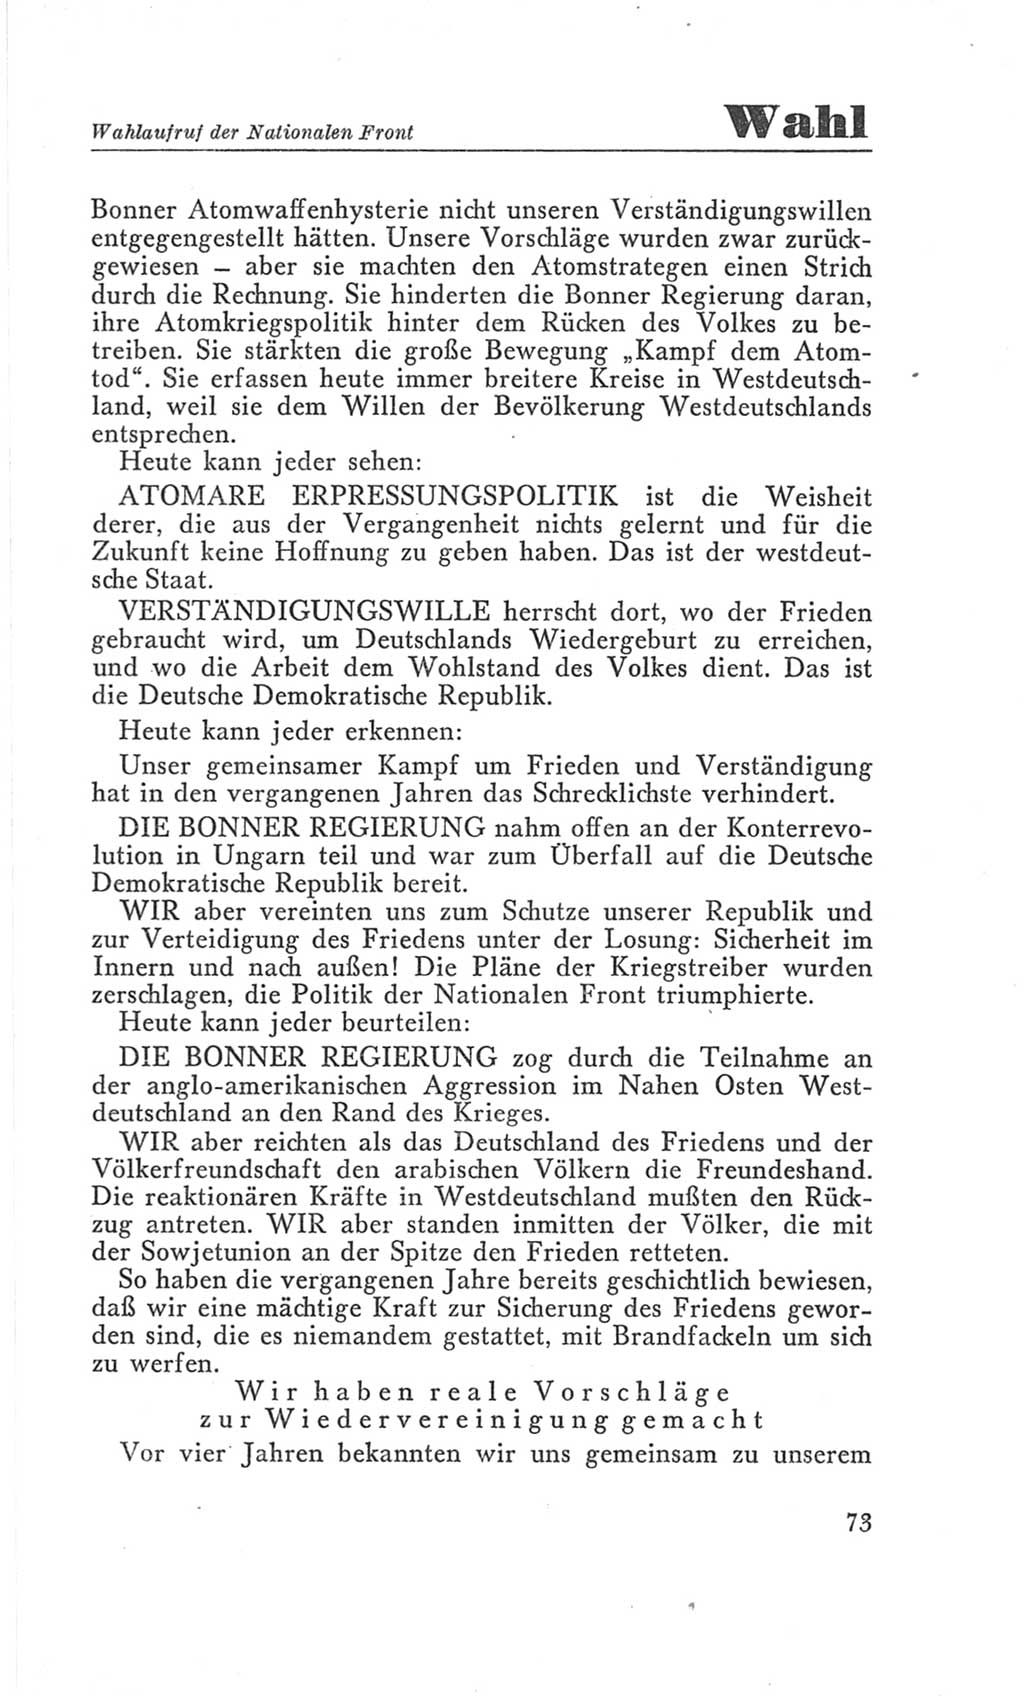 Handbuch der Volkskammer (VK) der Deutschen Demokratischen Republik (DDR), 3. Wahlperiode 1958-1963, Seite 73 (Hdb. VK. DDR 3. WP. 1958-1963, S. 73)